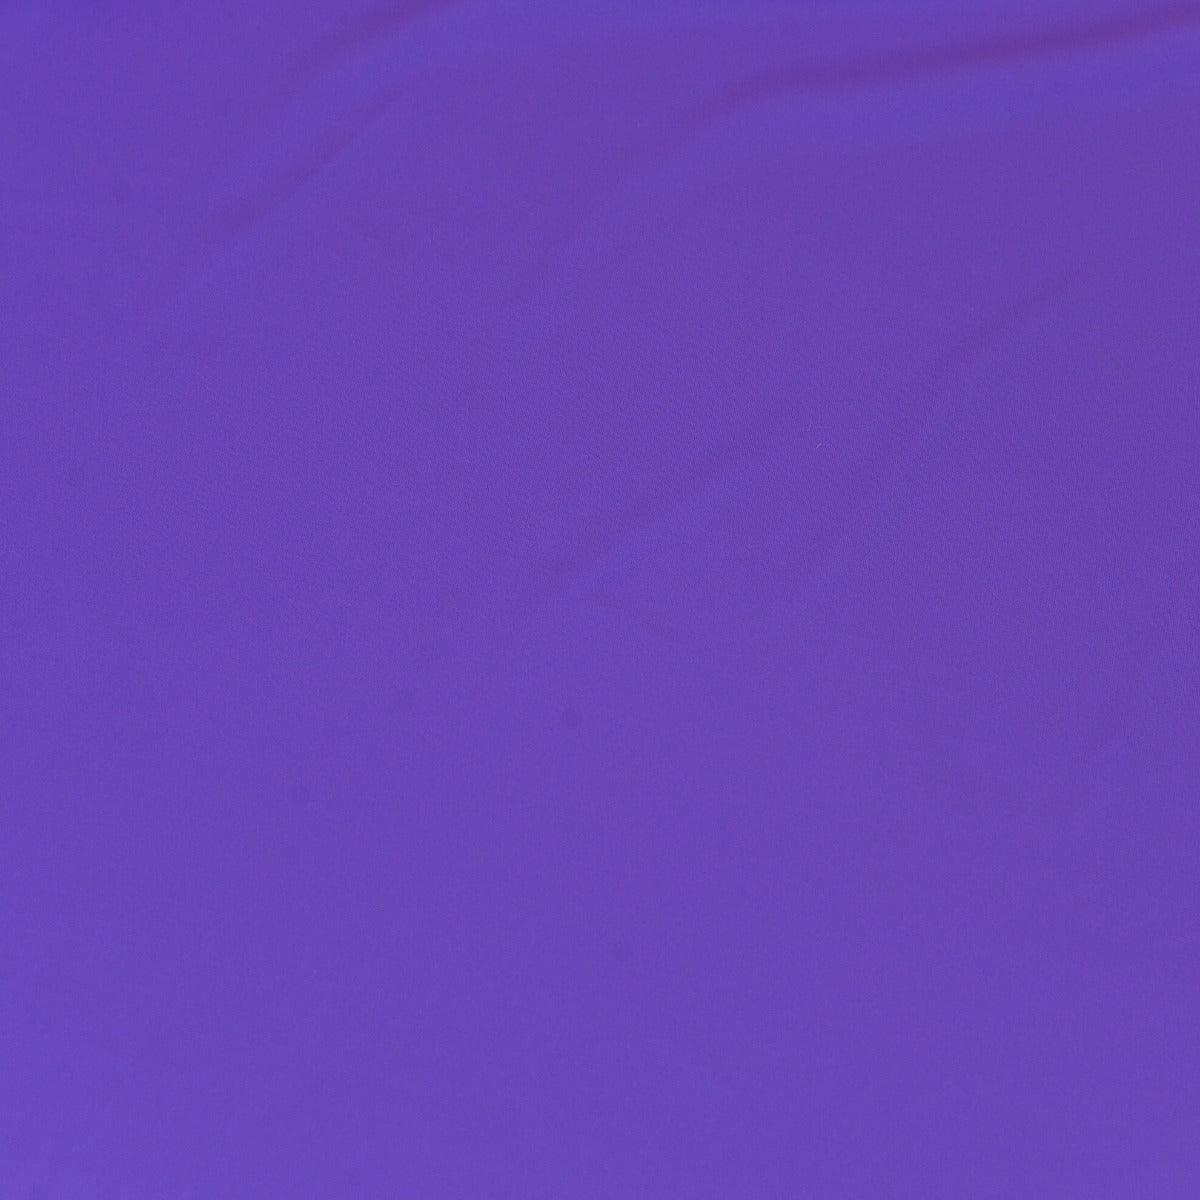 Lycra violet